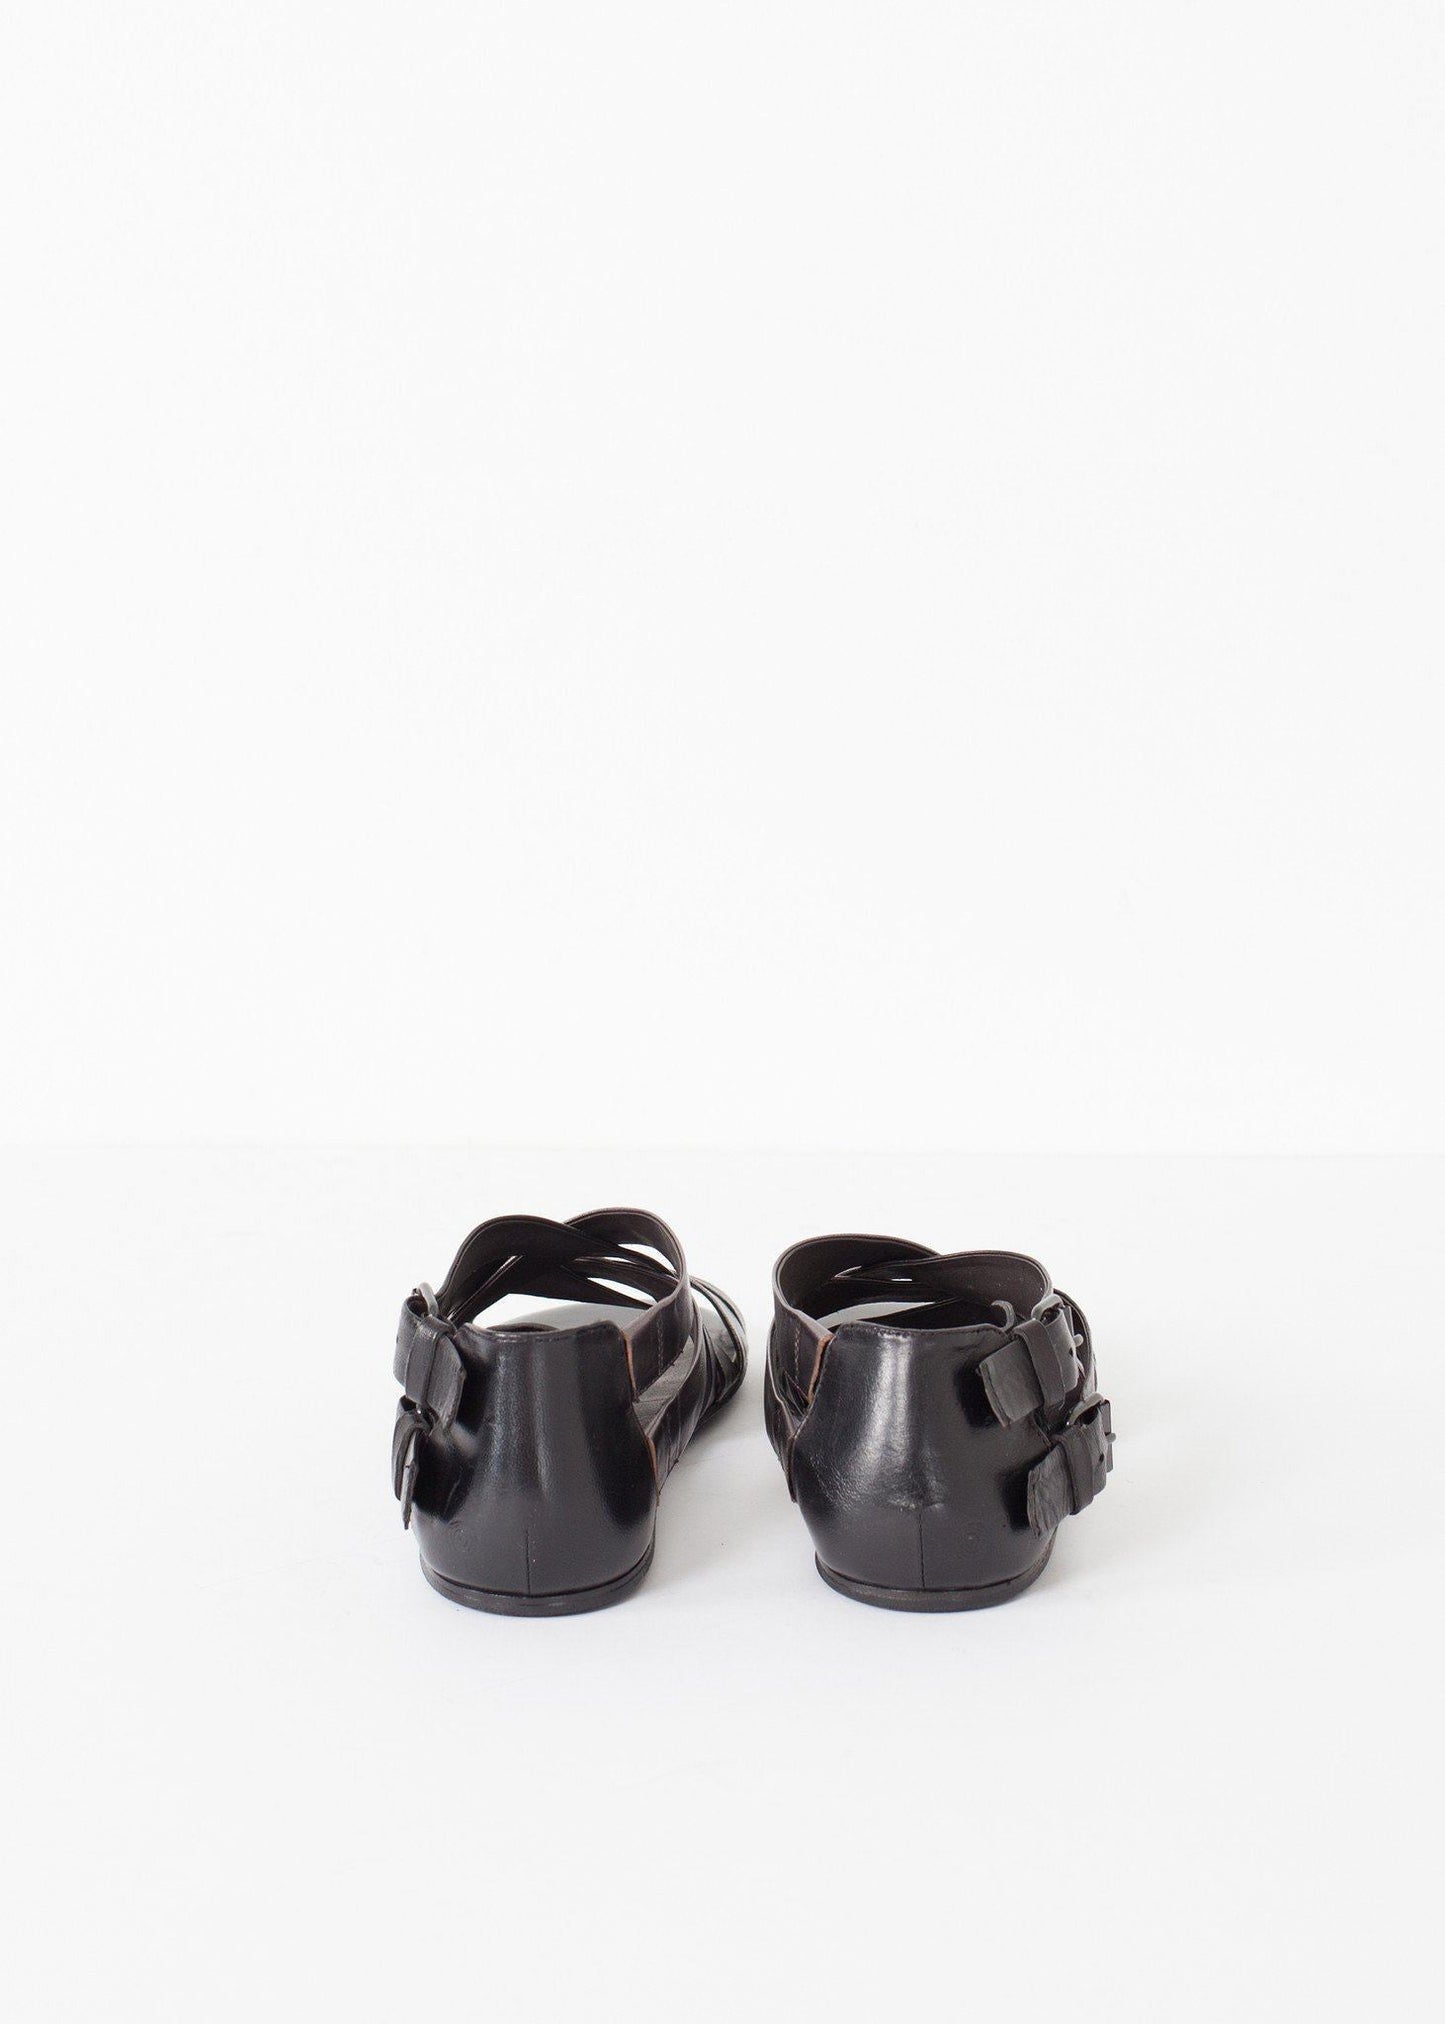 wrap sandal in black/steel women's shoes  *** 222